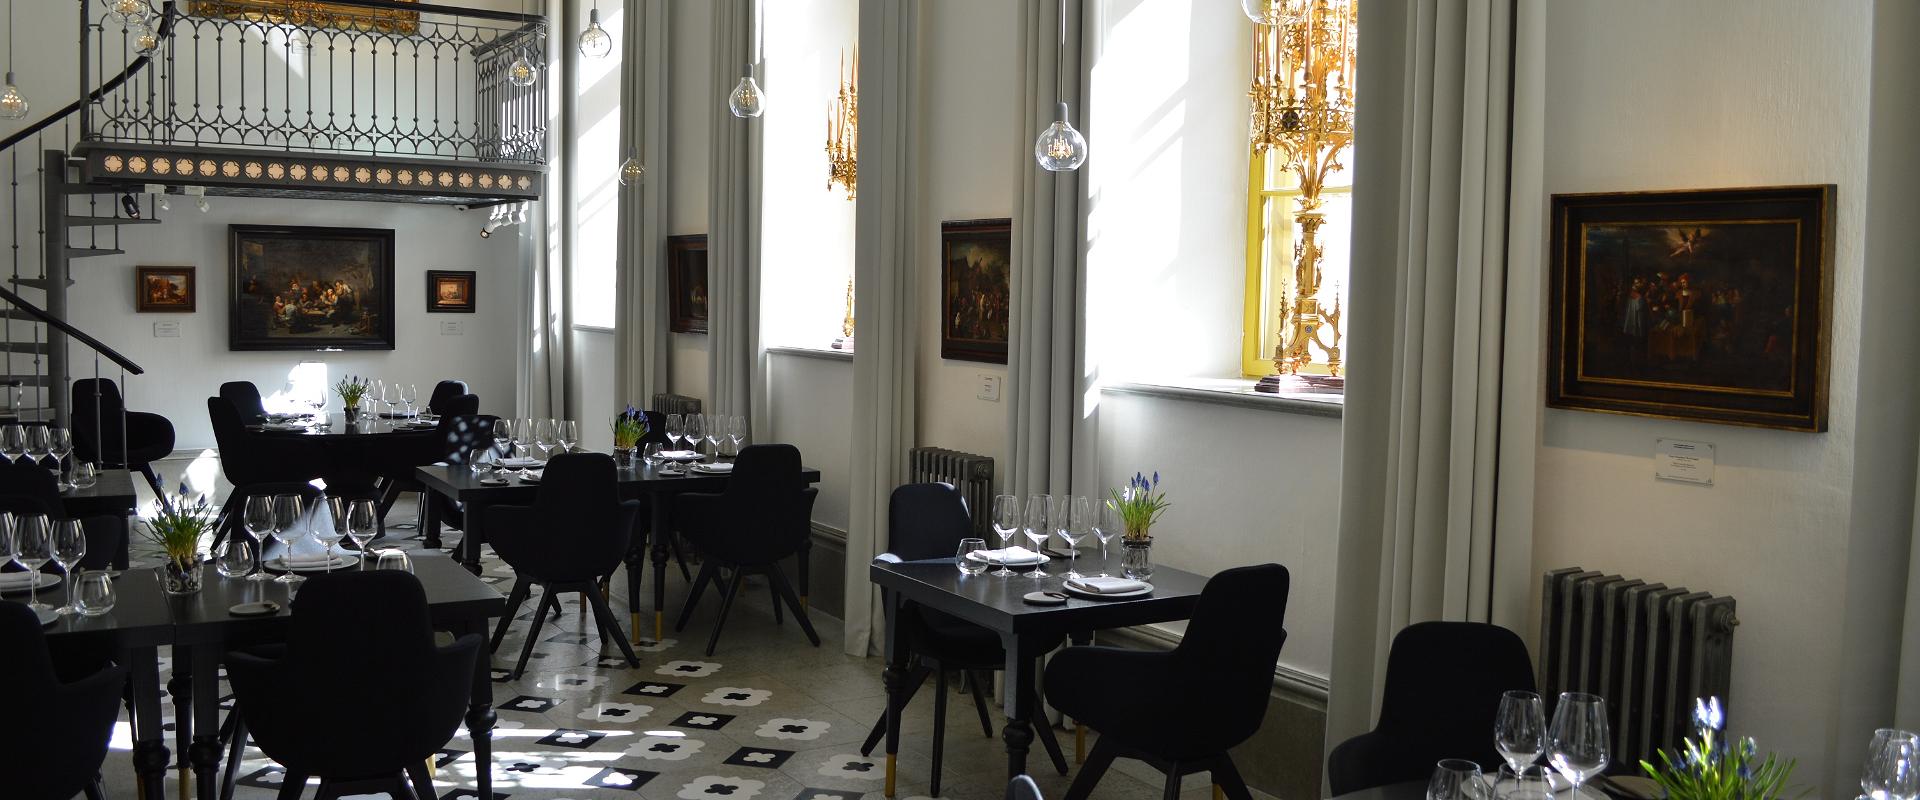 Ravintola Art Priori on korkeatasoista taidetta seinillä ja lautasella. Pehmeät, luovat ja edustavat maut tarjoavat sinulle elegantin ja yllättävän ru